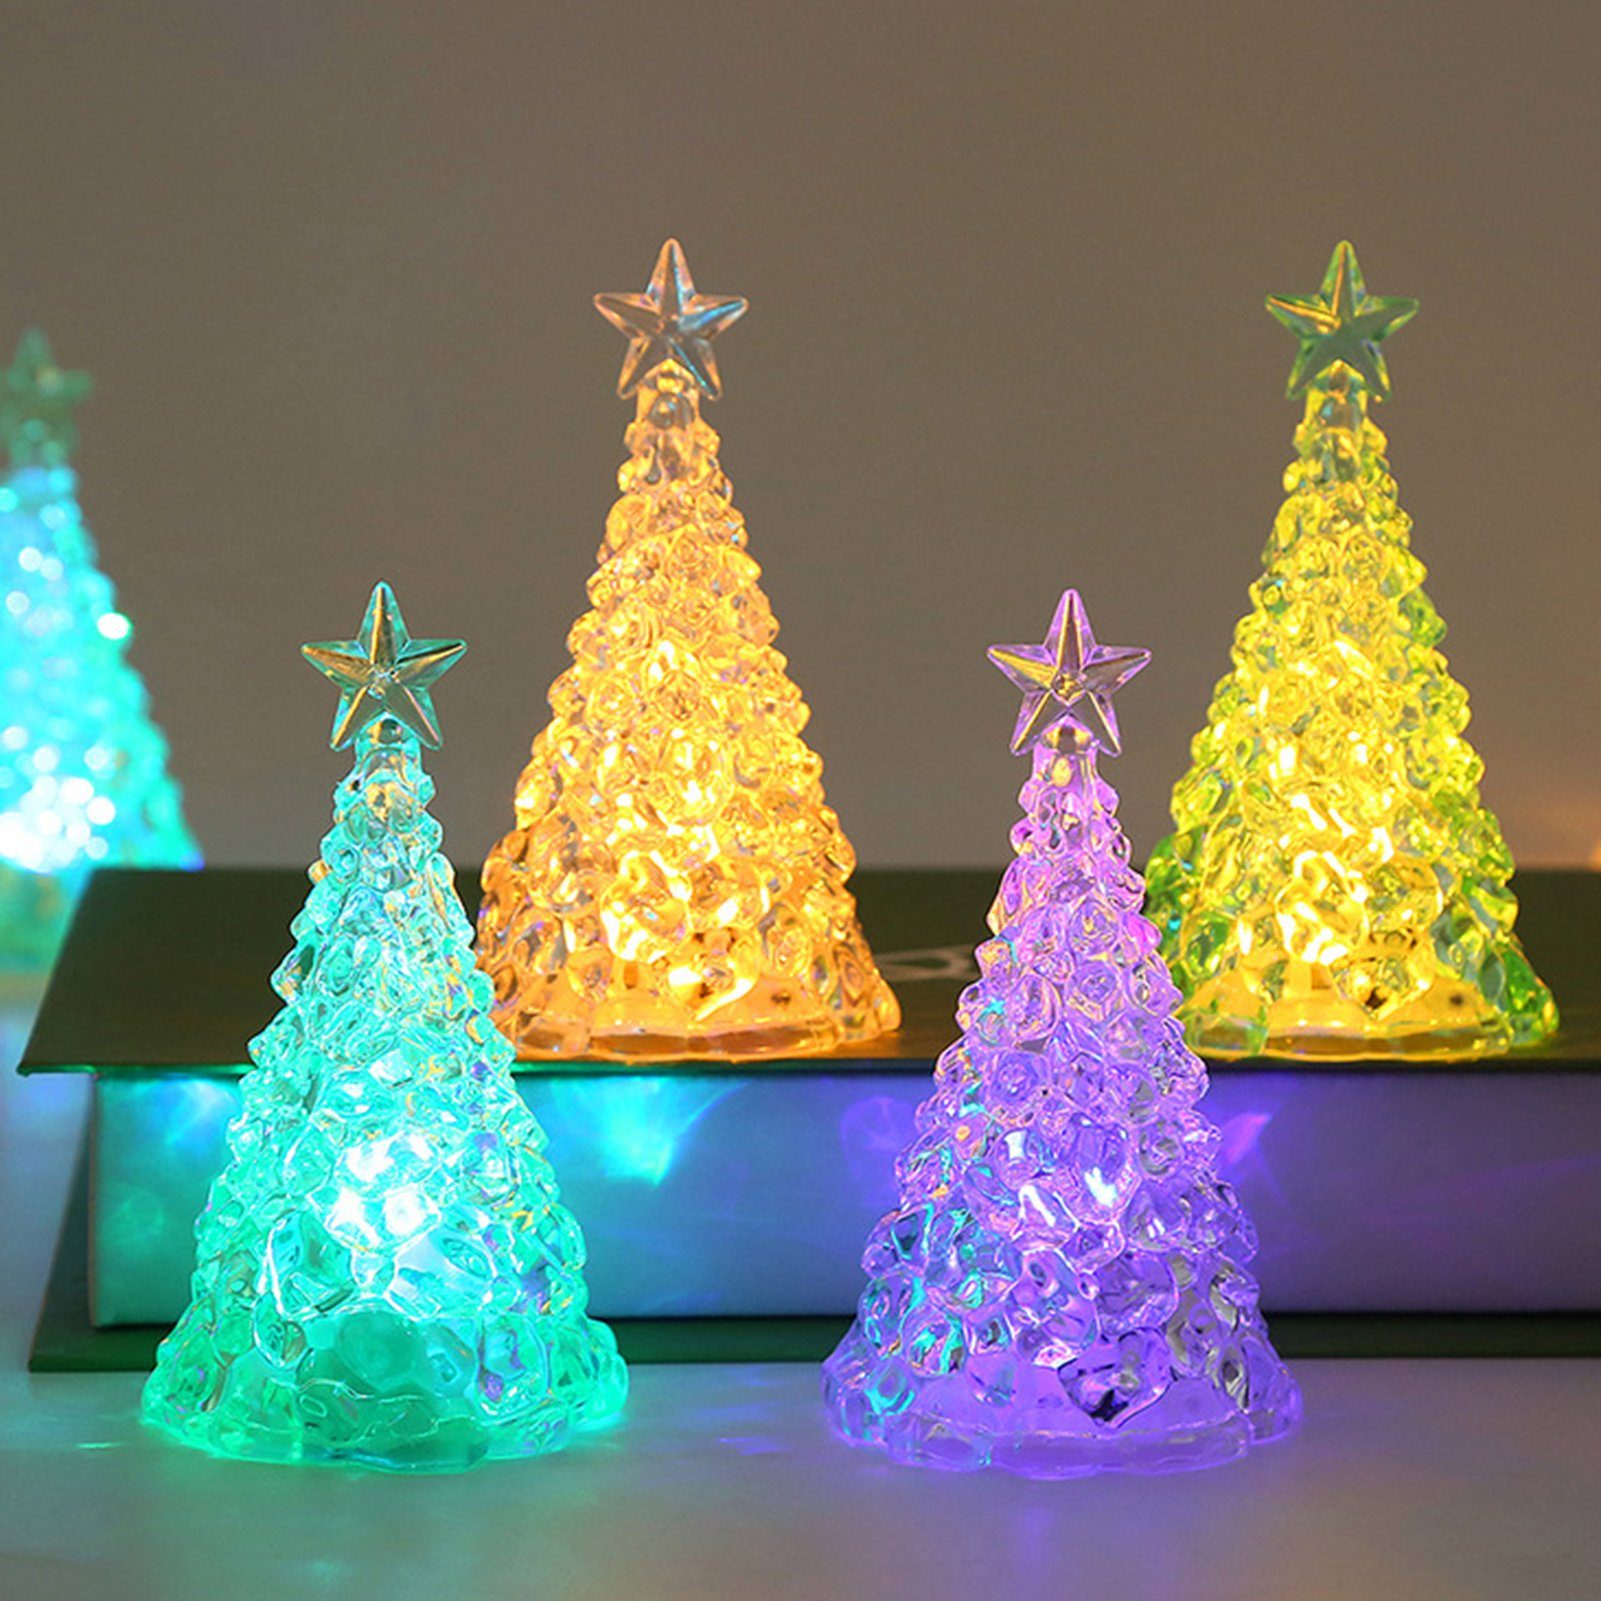 Rutaqian LED Nachtlicht 4 Stück Weihnachtsbaum Nachtlicht Heiligabend Geschenk LED Kerzenlicht, Weihnachtsdekorationen Desktop Ornament Kristall Nachtlicht Bunt